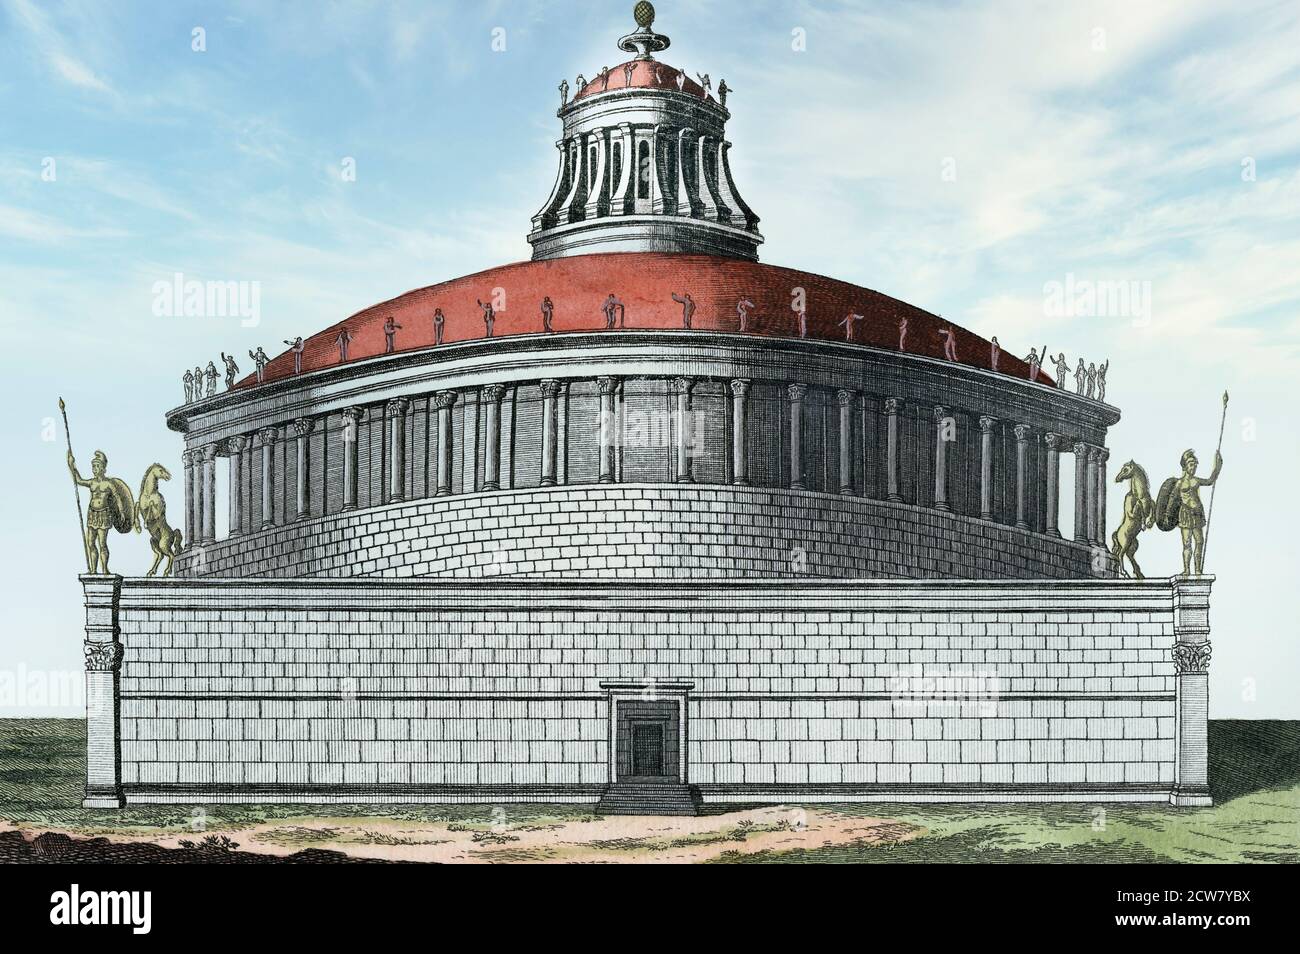 Das Mausoleum von Hadrian, oder Hadrians Grab, Rom. Jetzt Castel Sant’Angelo. Nach einem Werk eines unbekannten Künstlers aus dem frühen 19. Jahrhundert. Digital Sky hinzugefügt. Stockfoto